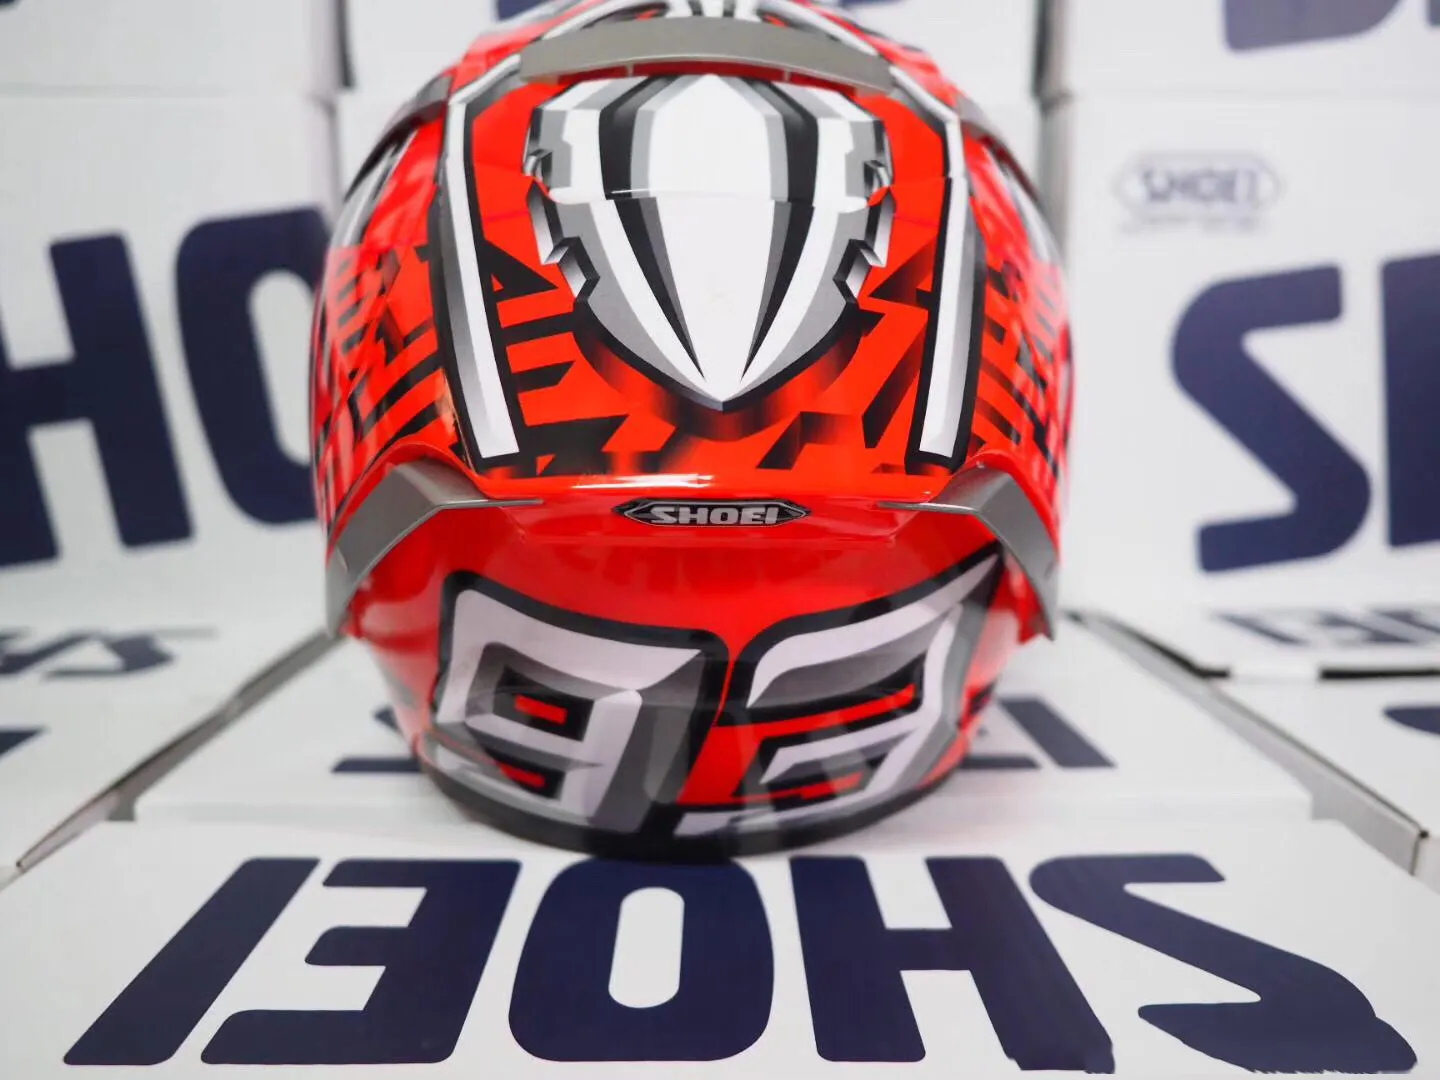 Shoei rosto cheio x14 93 marquez motegi hikman capacete da motocicleta homem equitação carro motocross corrida moto capacete-NOT-ORIGINAL-helme2750